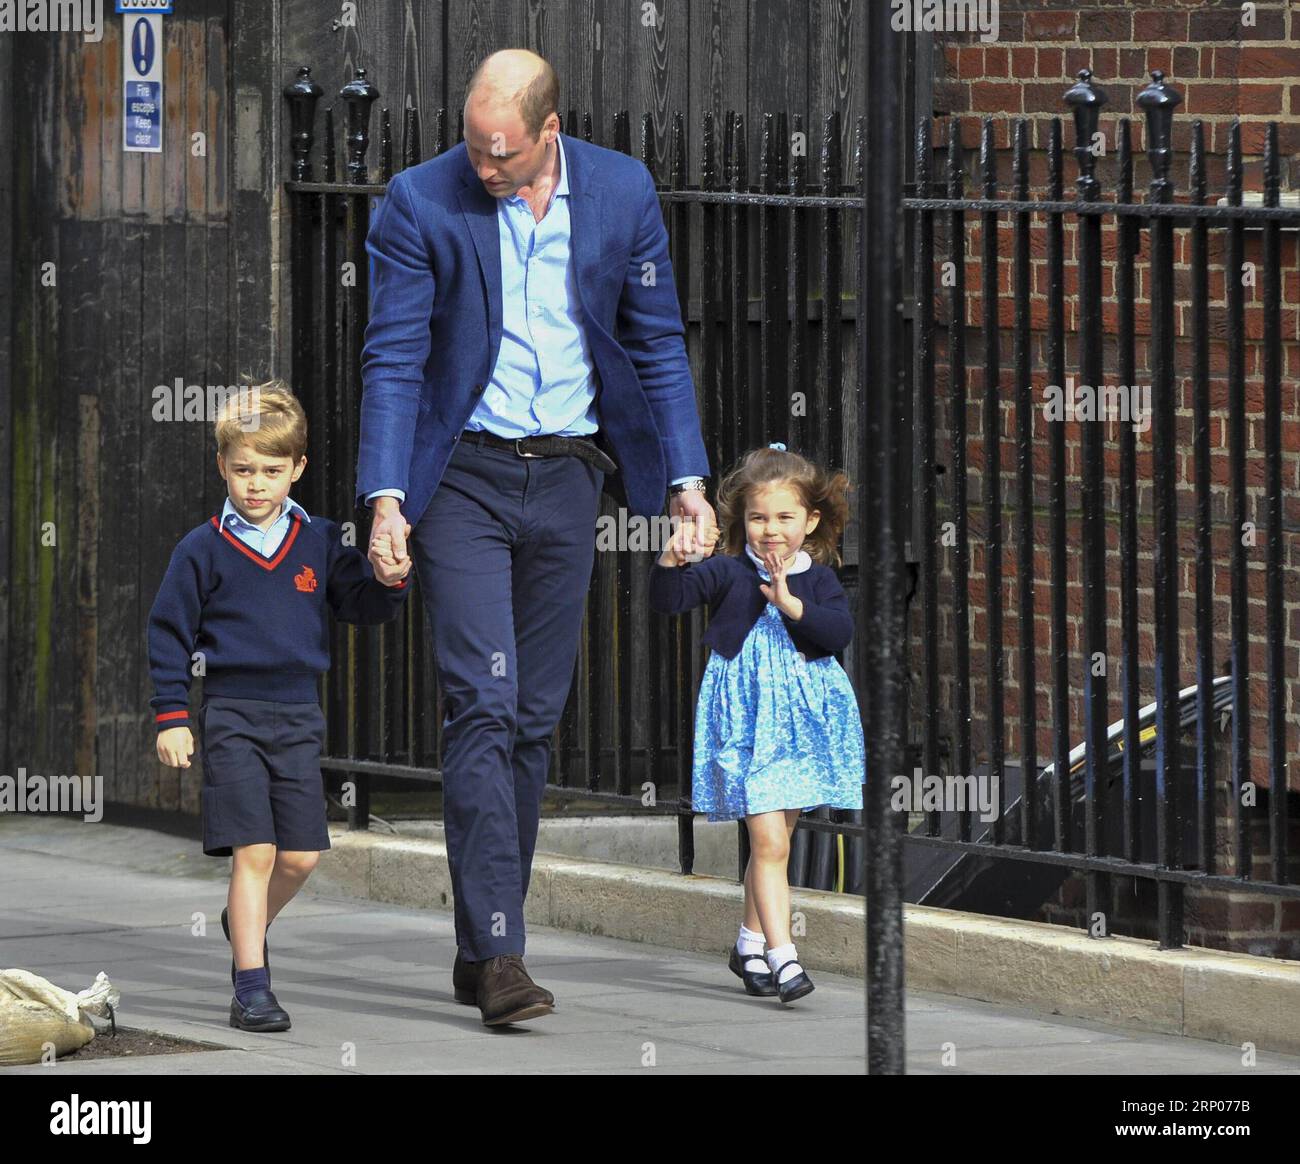 (180424) -- LONDRA, 24 aprile 2018 -- il principe William (C), duca di Cambridge arriva con il principe George (L) e la principessa Charlotte a visitare la Gran Bretagna S Catherine, duchessa di Cambridge, che ha dato alla luce un bambino al St Mary S Hospital di Londra, in Gran Bretagna, il 23 aprile 2018. La principessa Kate lunedì ha dato alla luce un ragazzo, il suo terzo figlio, che è il quinto in linea di successione al trono britannico. BRITAIN-LONDON-ROYAL BABY StephenxChung PUBLICATIONxNOTxINxCHN Foto Stock